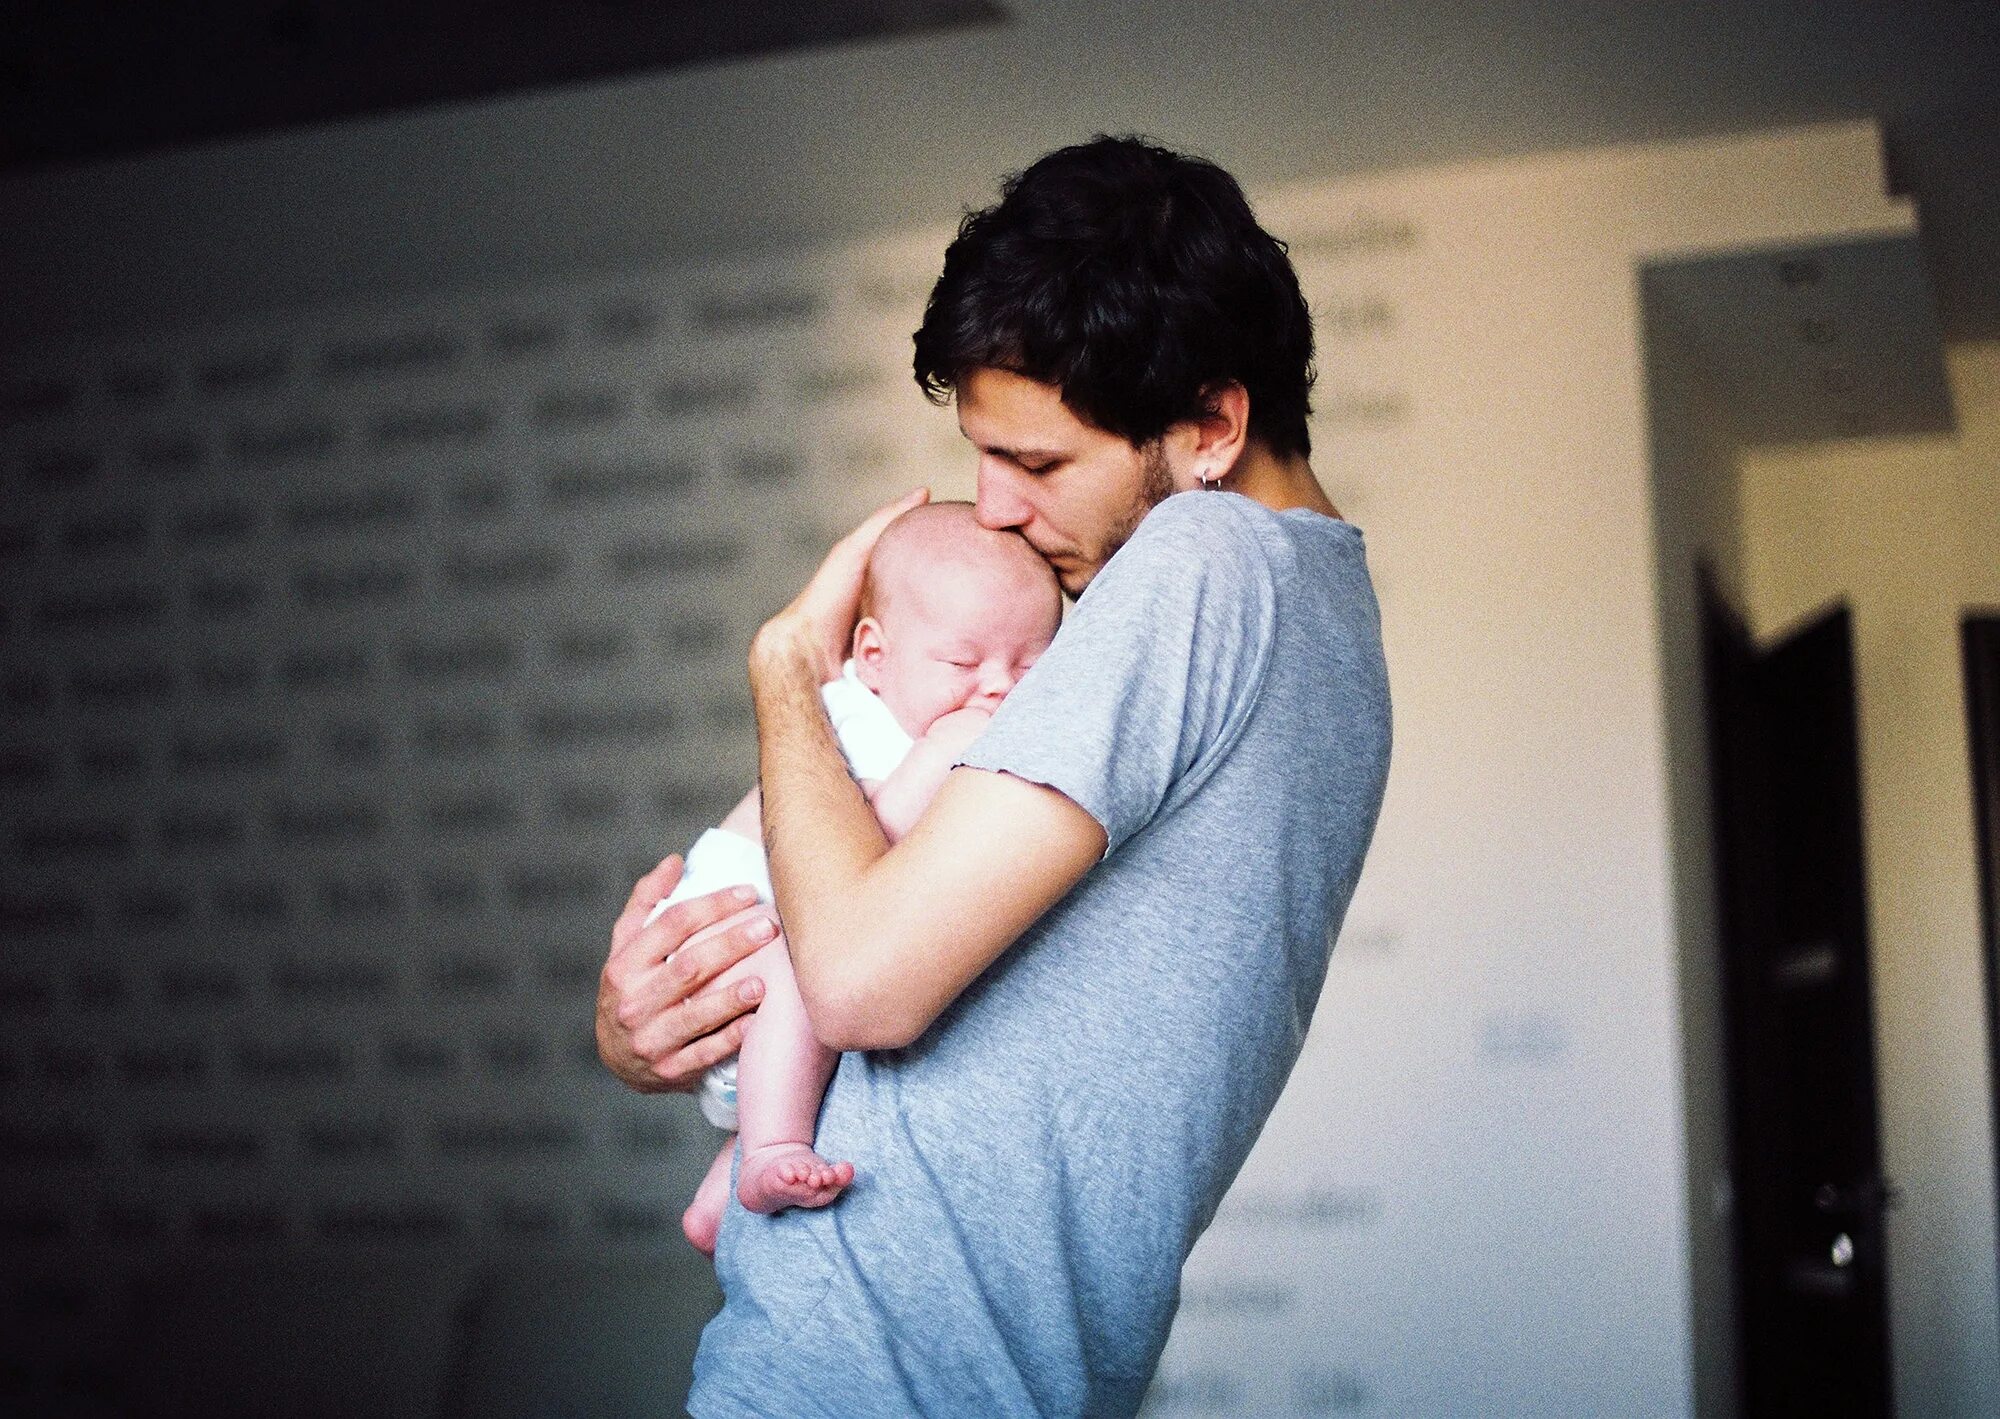 Мама у папы берет. Мужчина с ребенком на руках. Ребенок на руках. Мужчина держит ребенка. Ужчига держит ребёнка в руках.